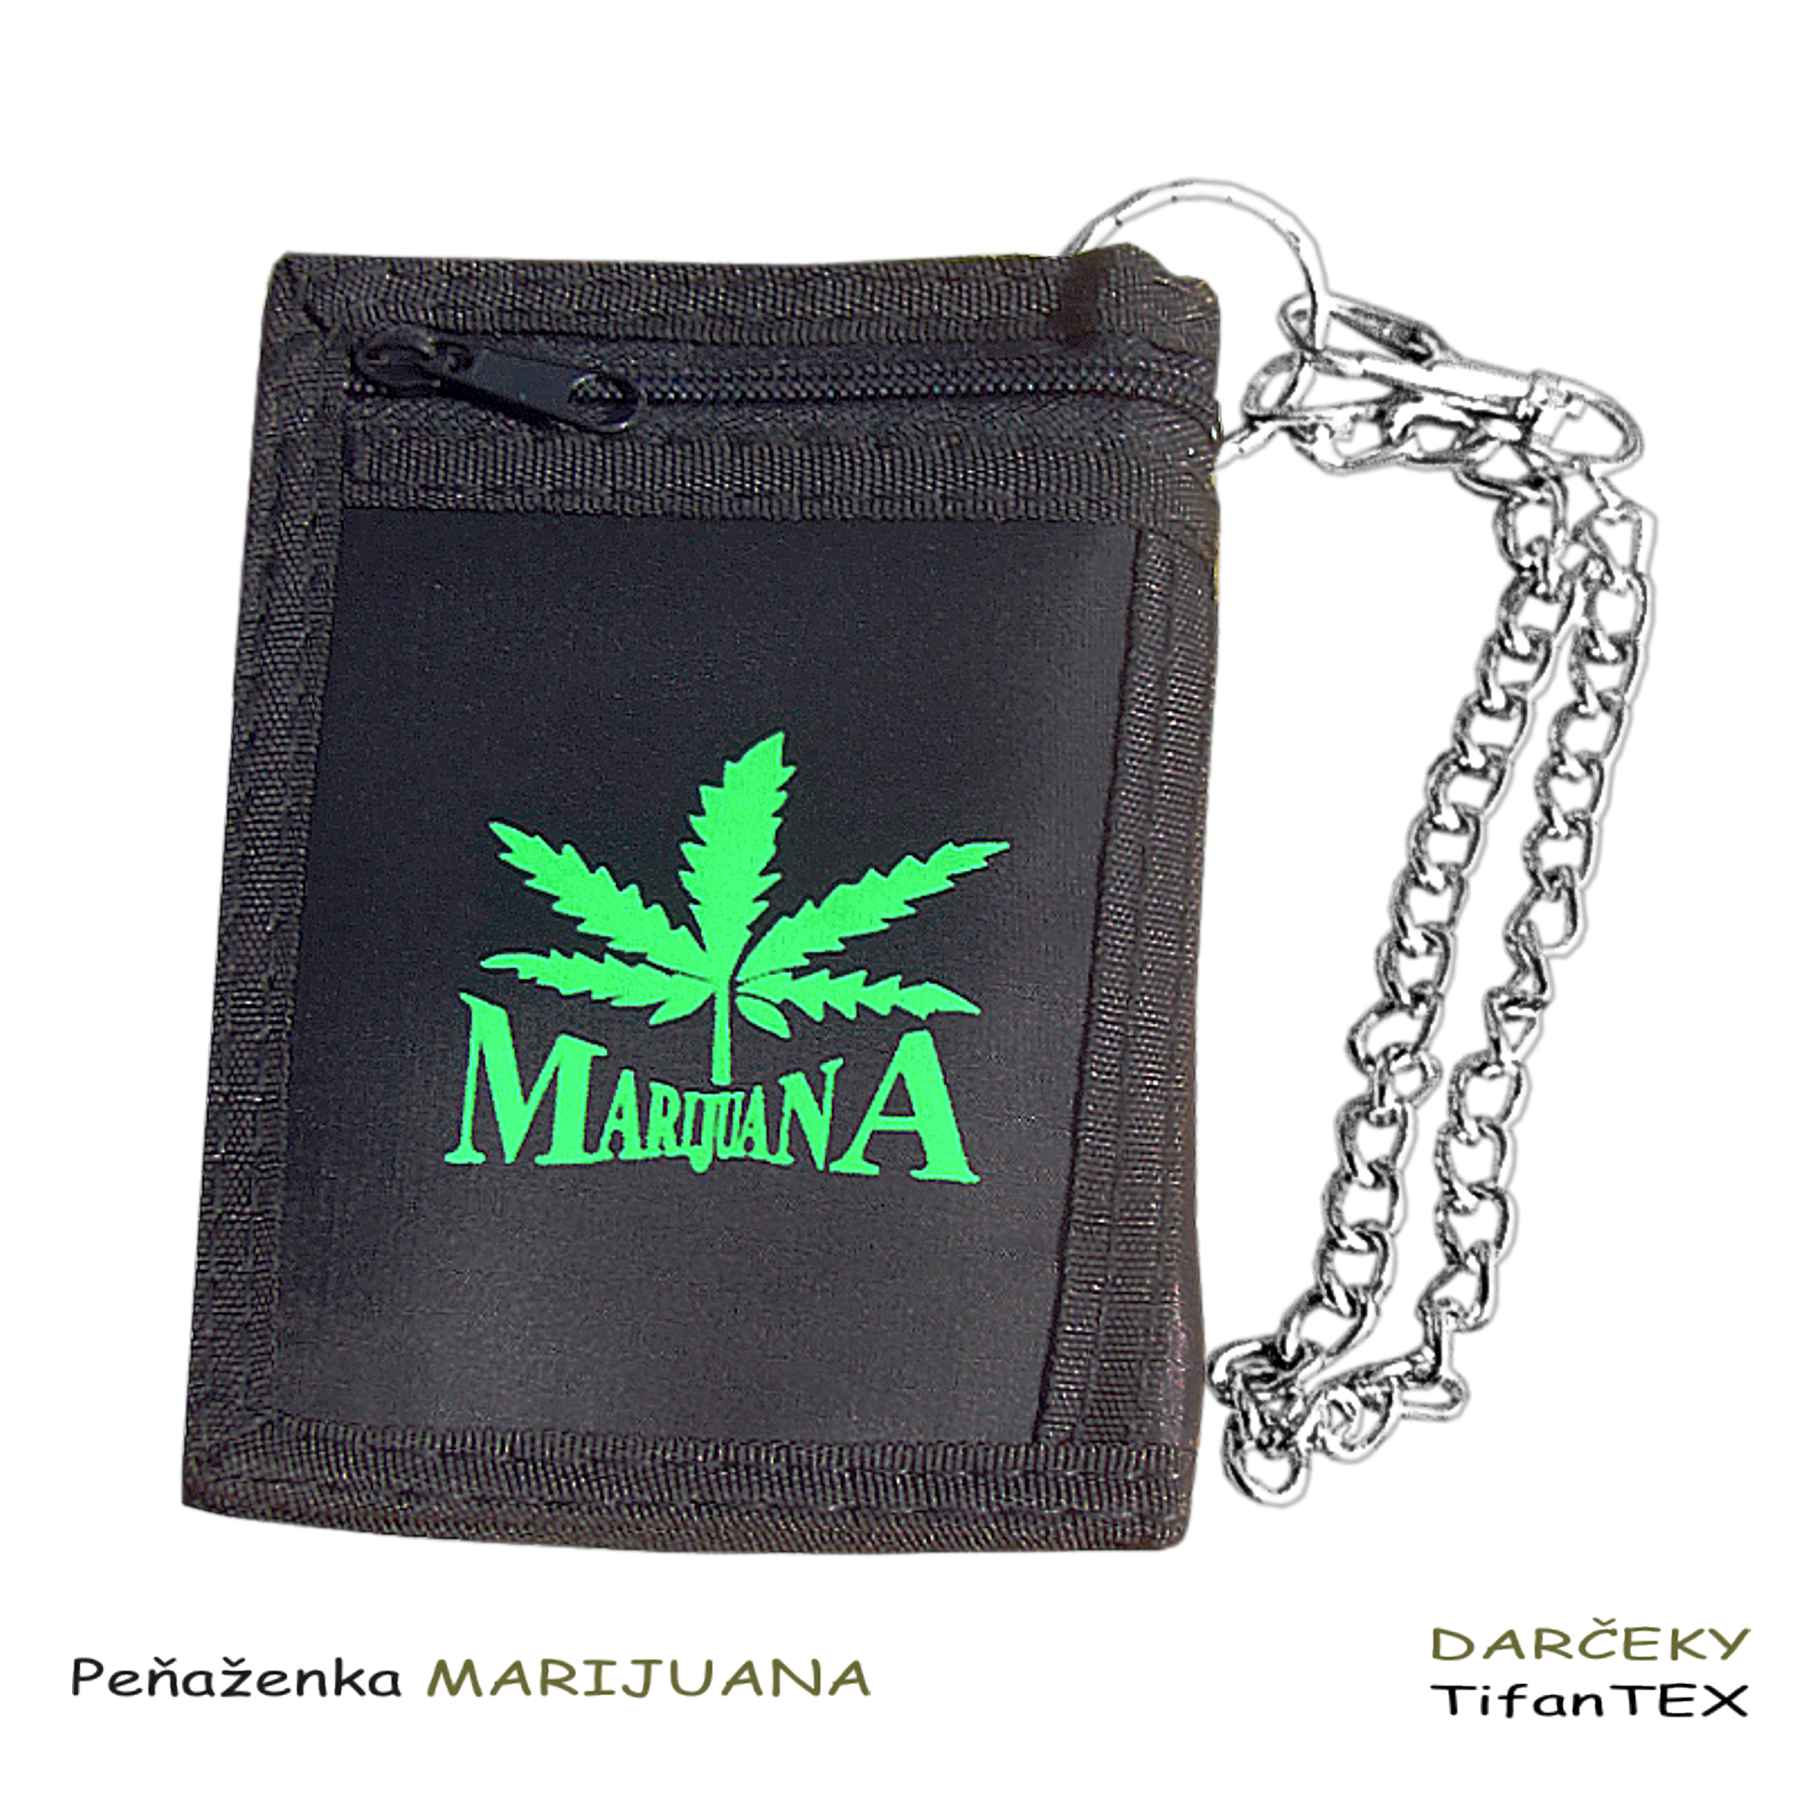 Nylonová čierna peňaženka Marijuana, veľkosklad Tifantex